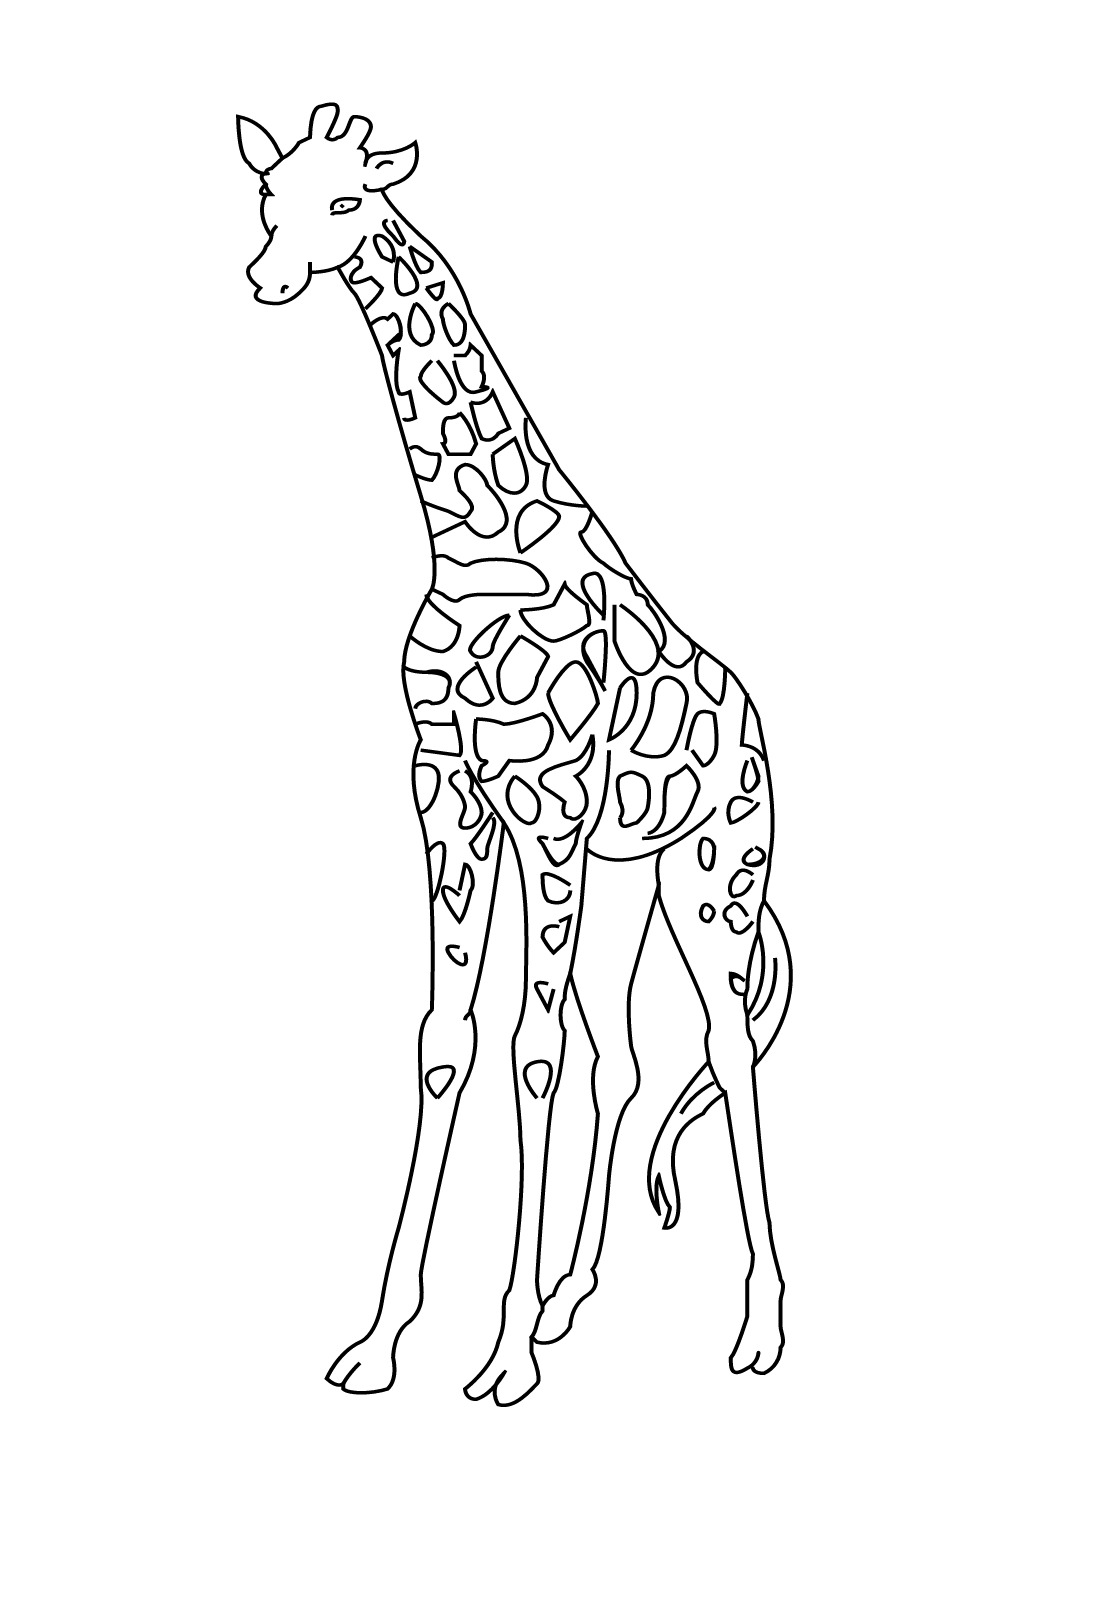 Эскиз жирафа для раскрашивания